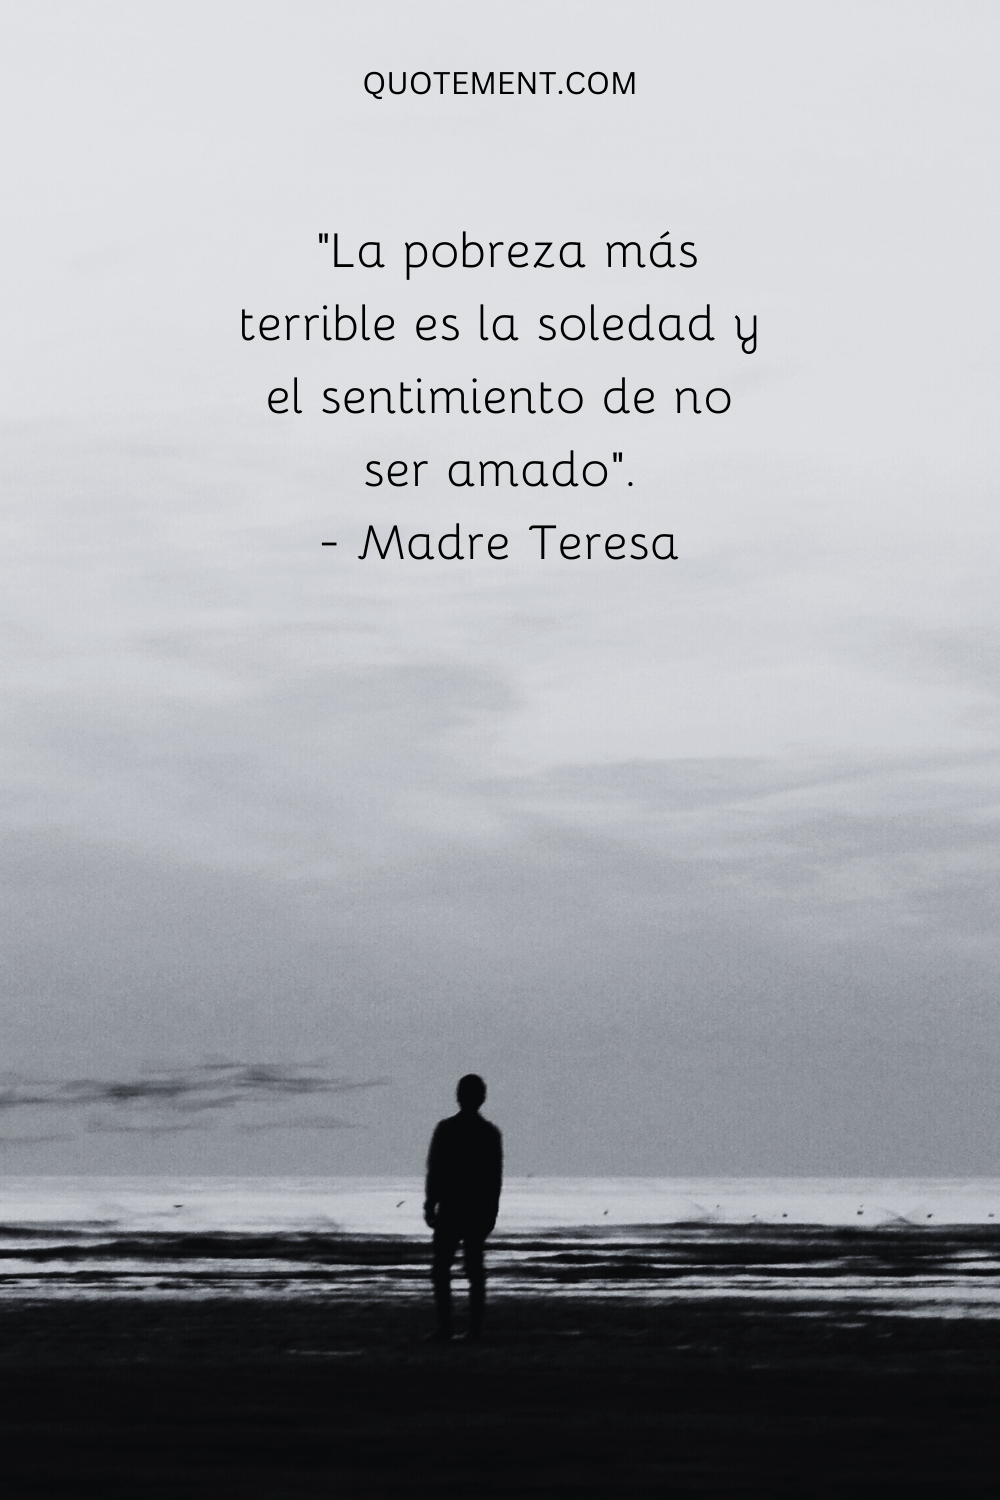 "La pobreza más terrible es la soledad y el sentimiento de no ser amado". - Madre Teresa